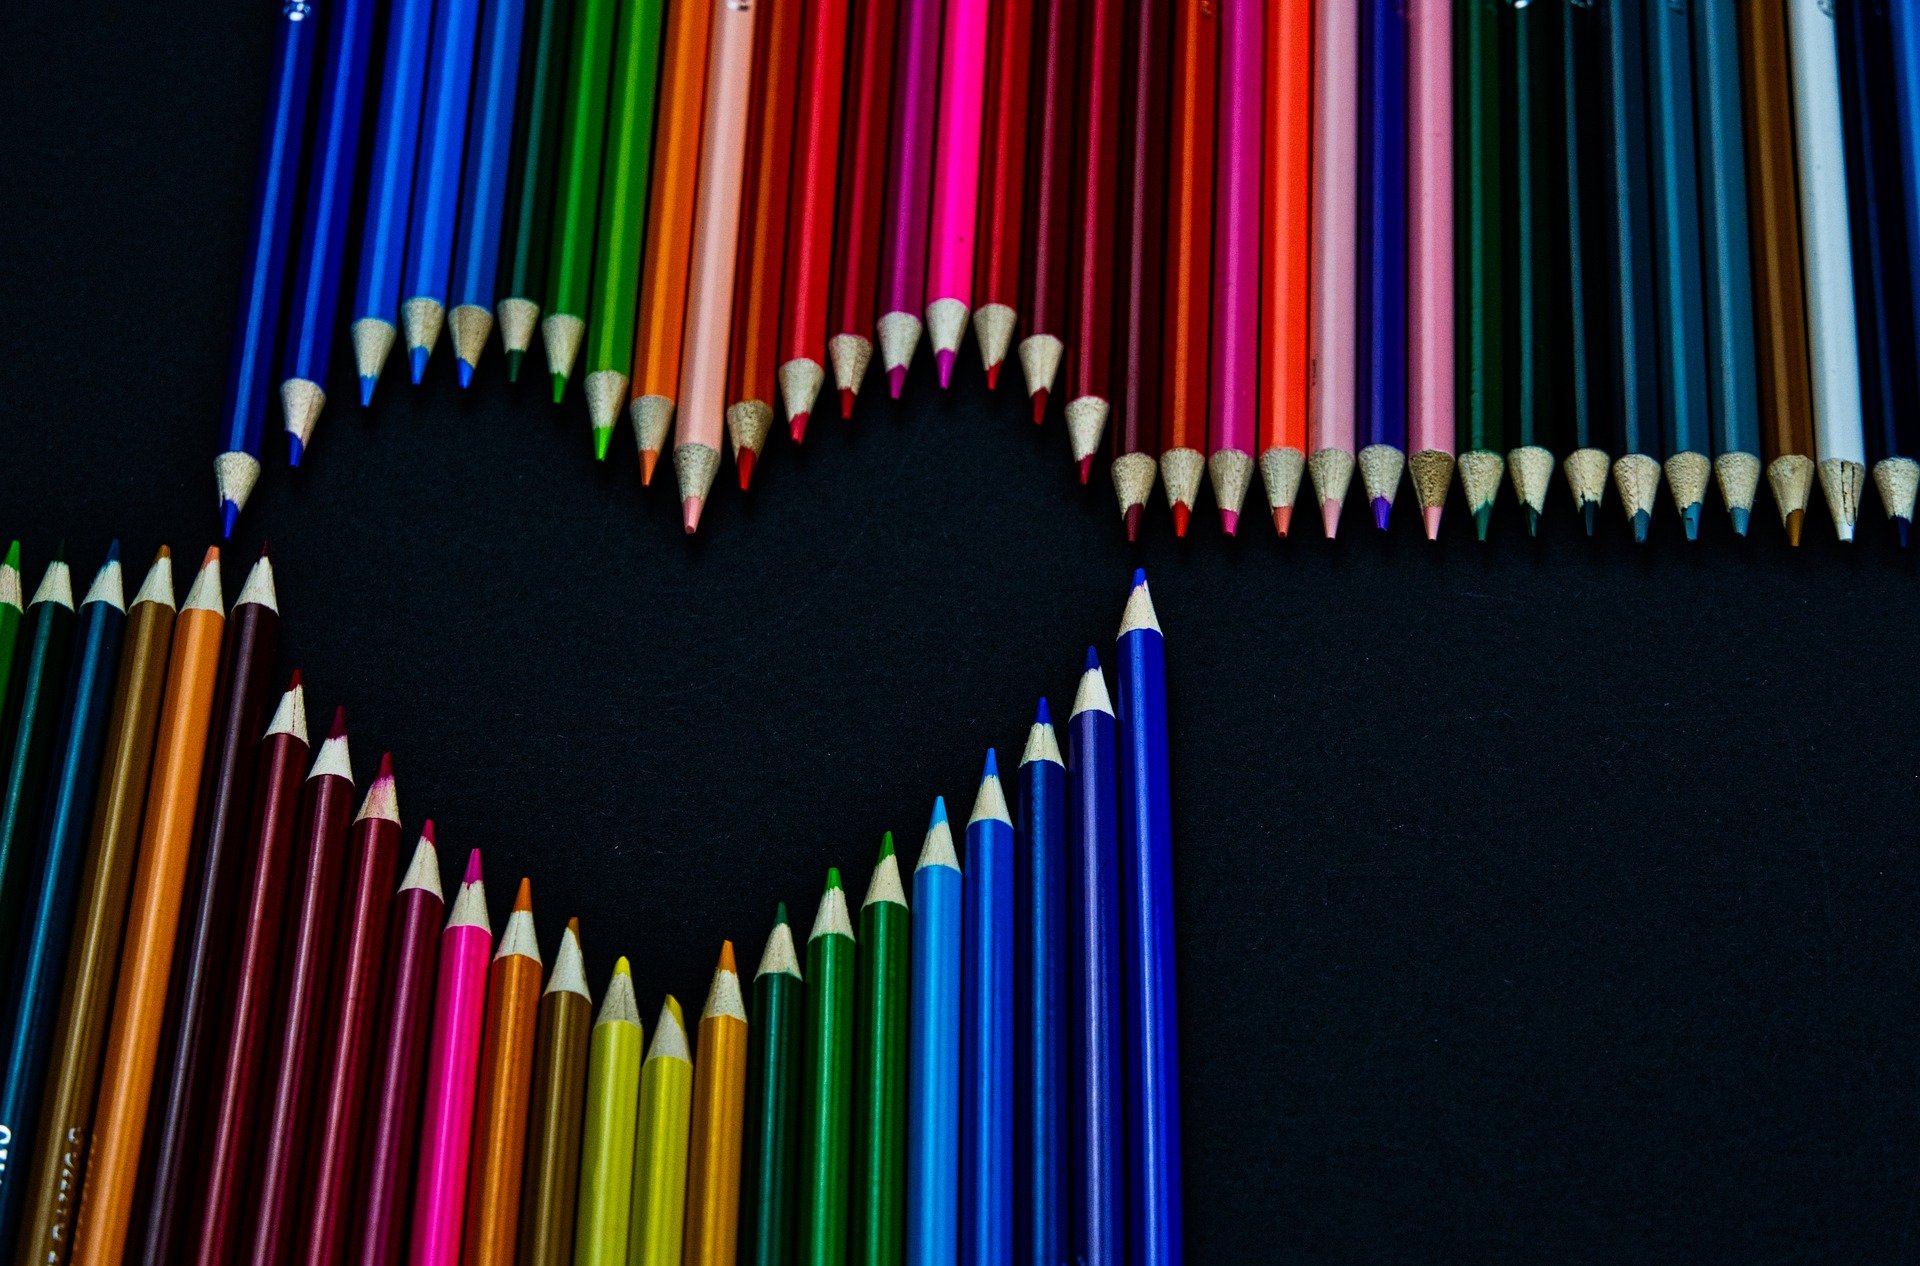 Lápis de cor variados alinhados para formar um coração